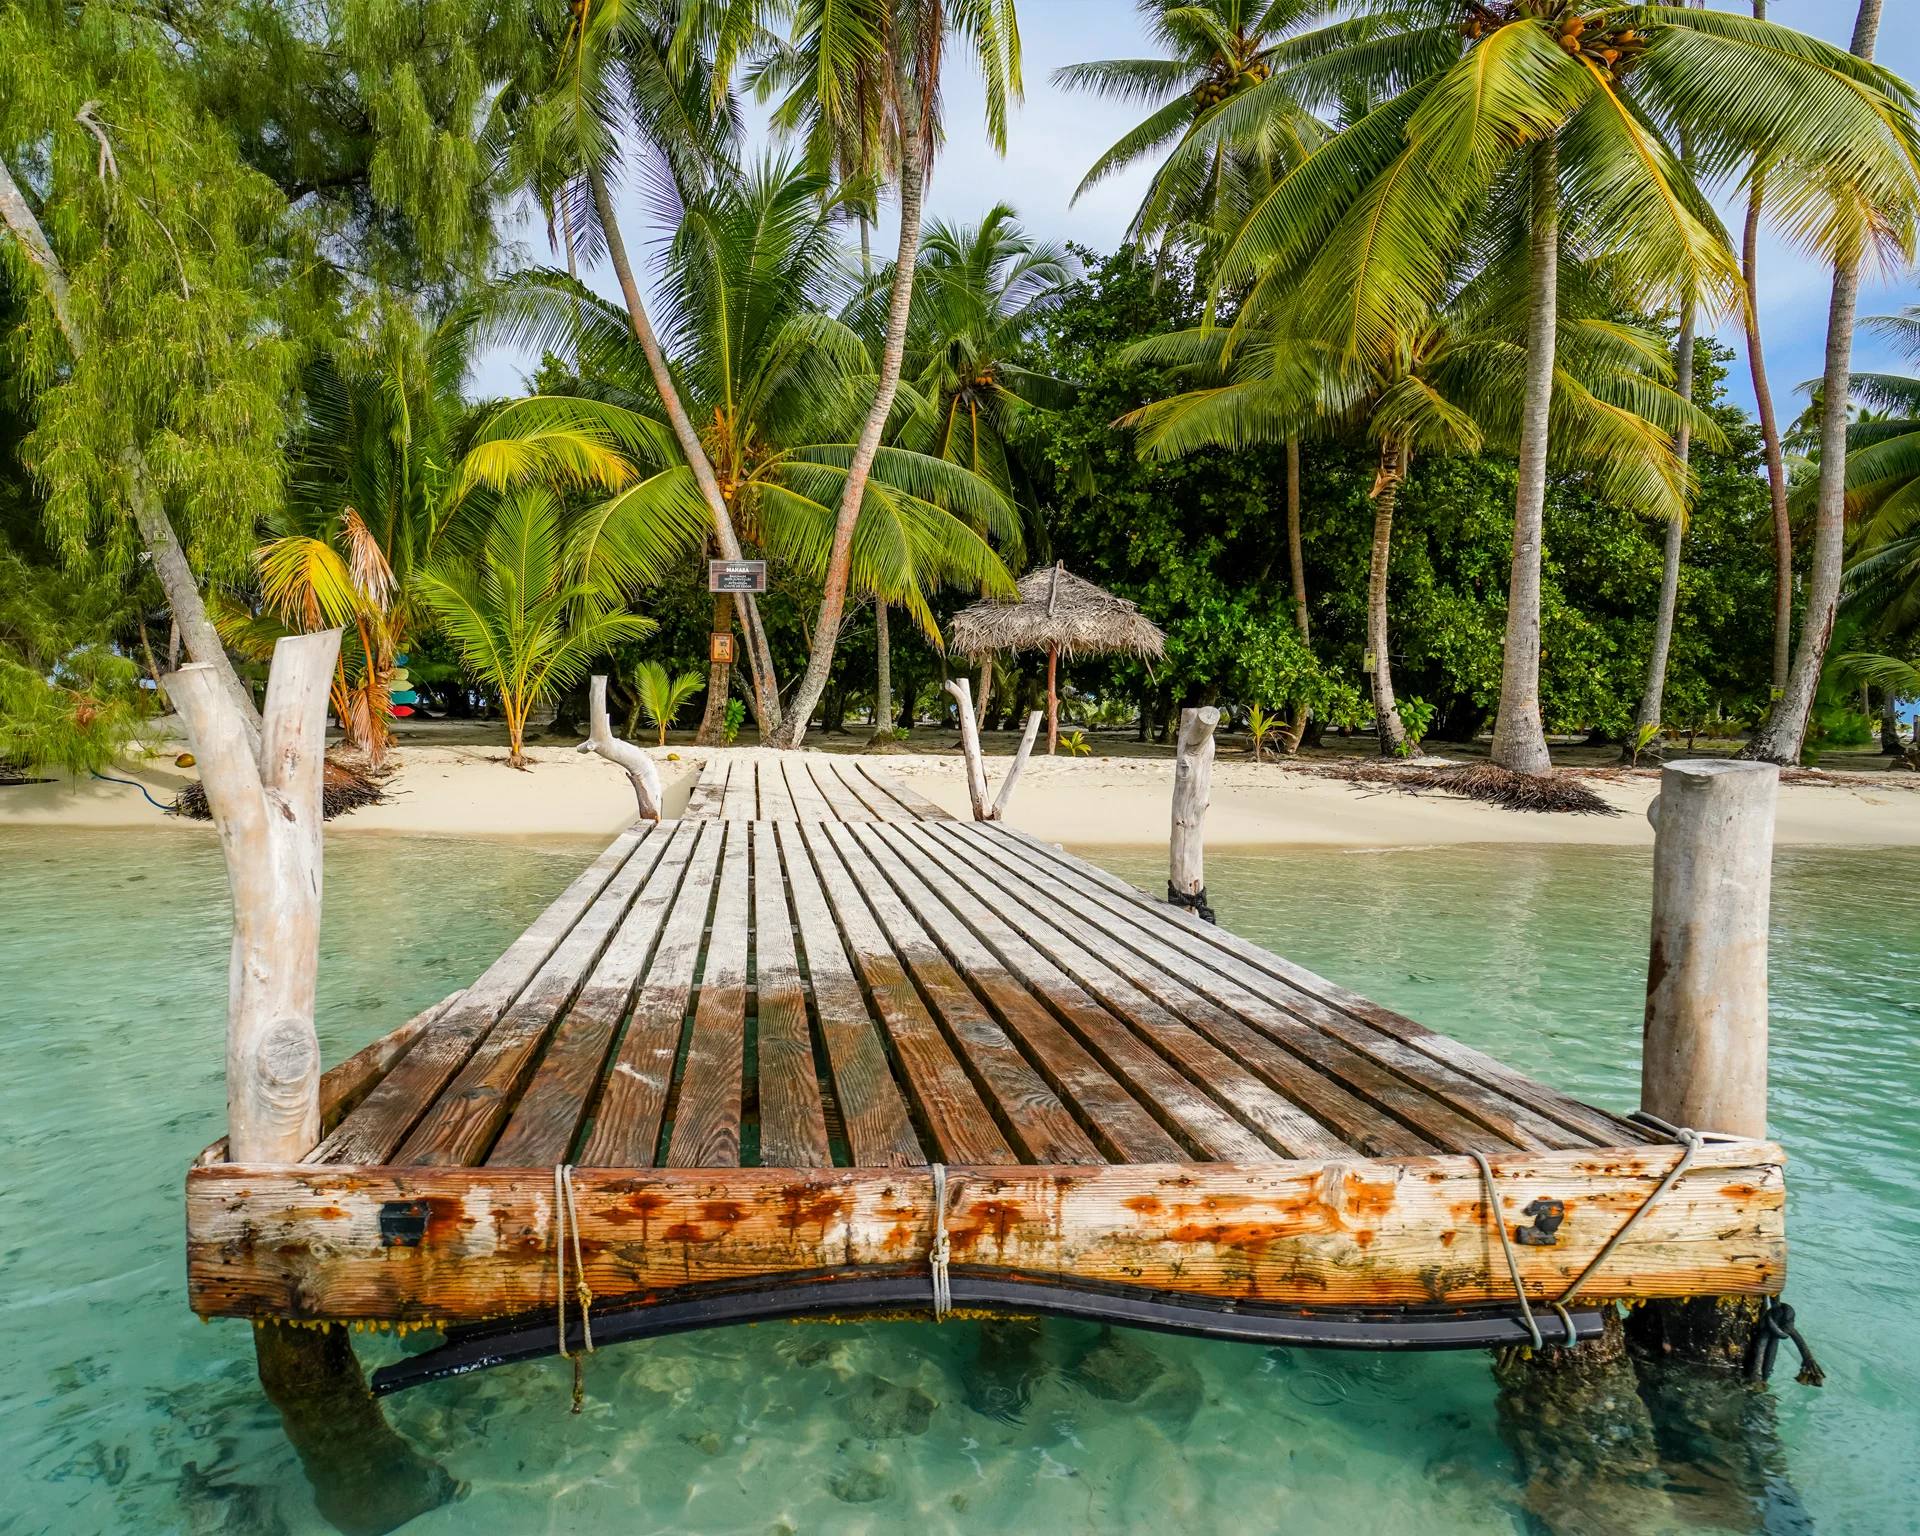 Quai sur une plage sur la mer des Caraïbes, endroit parfait pour des vacances